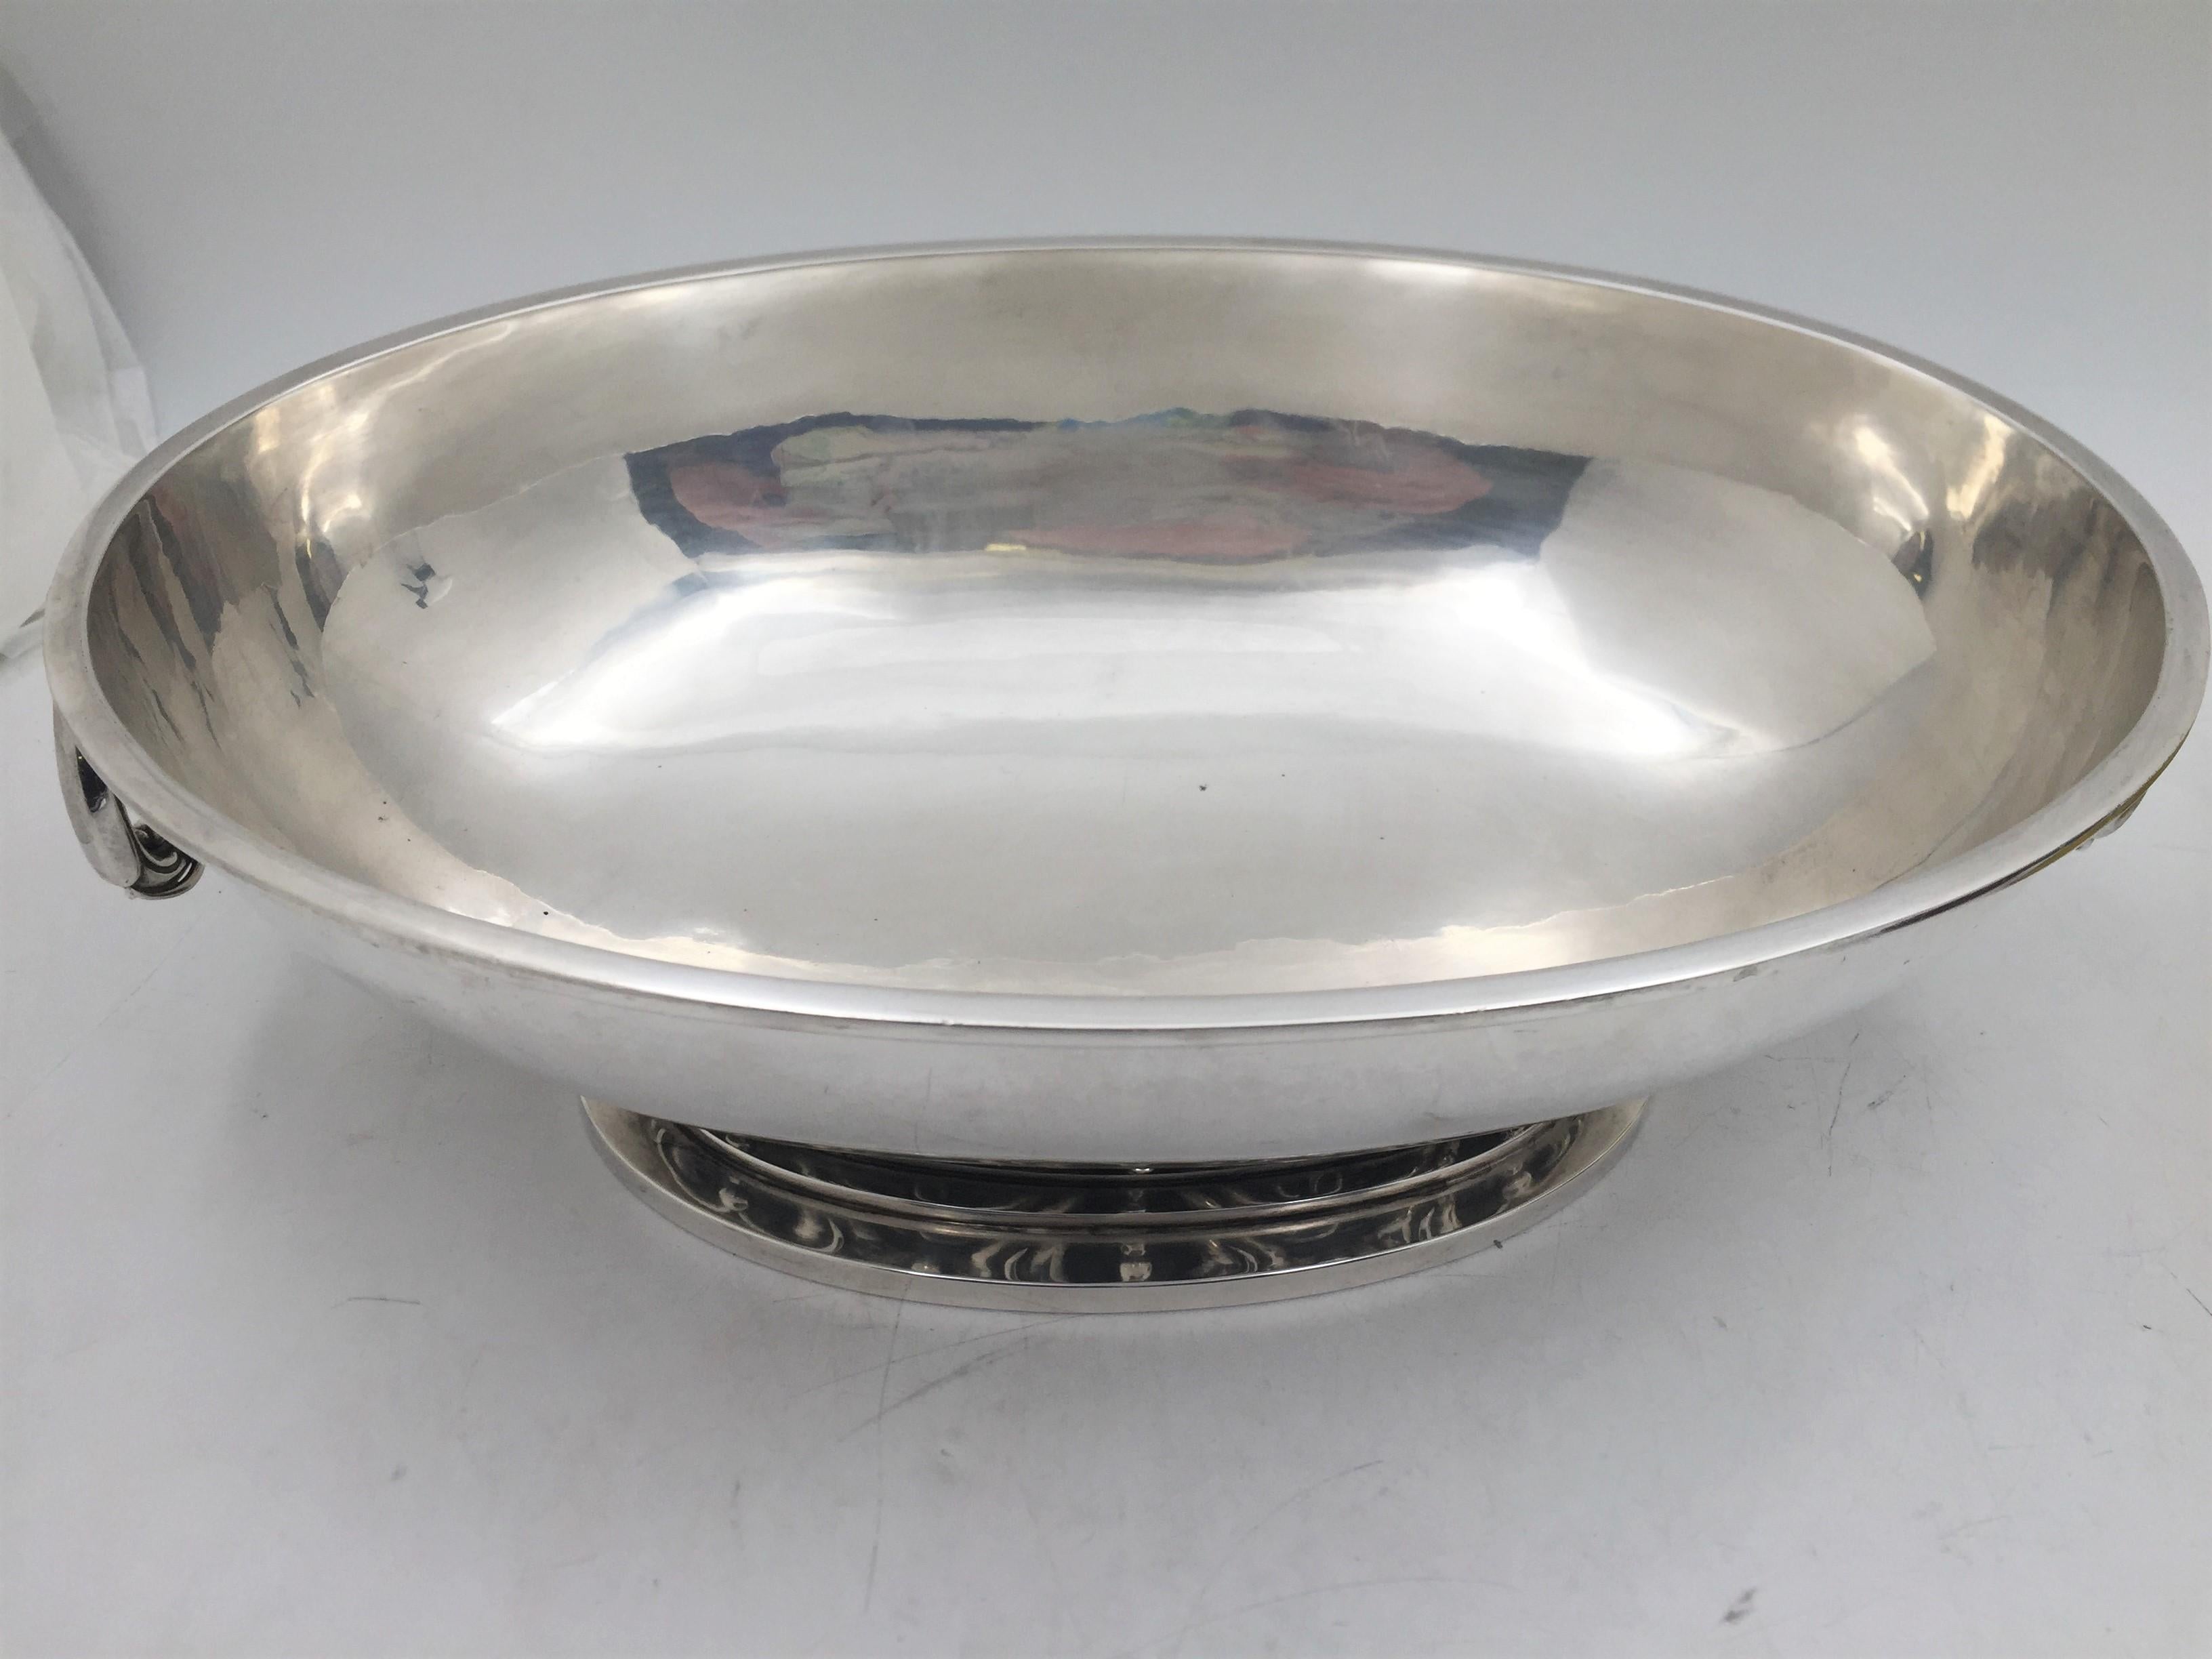 Danish Heimburger Silver Hammered Centerpiece Bowl in Mid-Century Modern Jensen Style For Sale